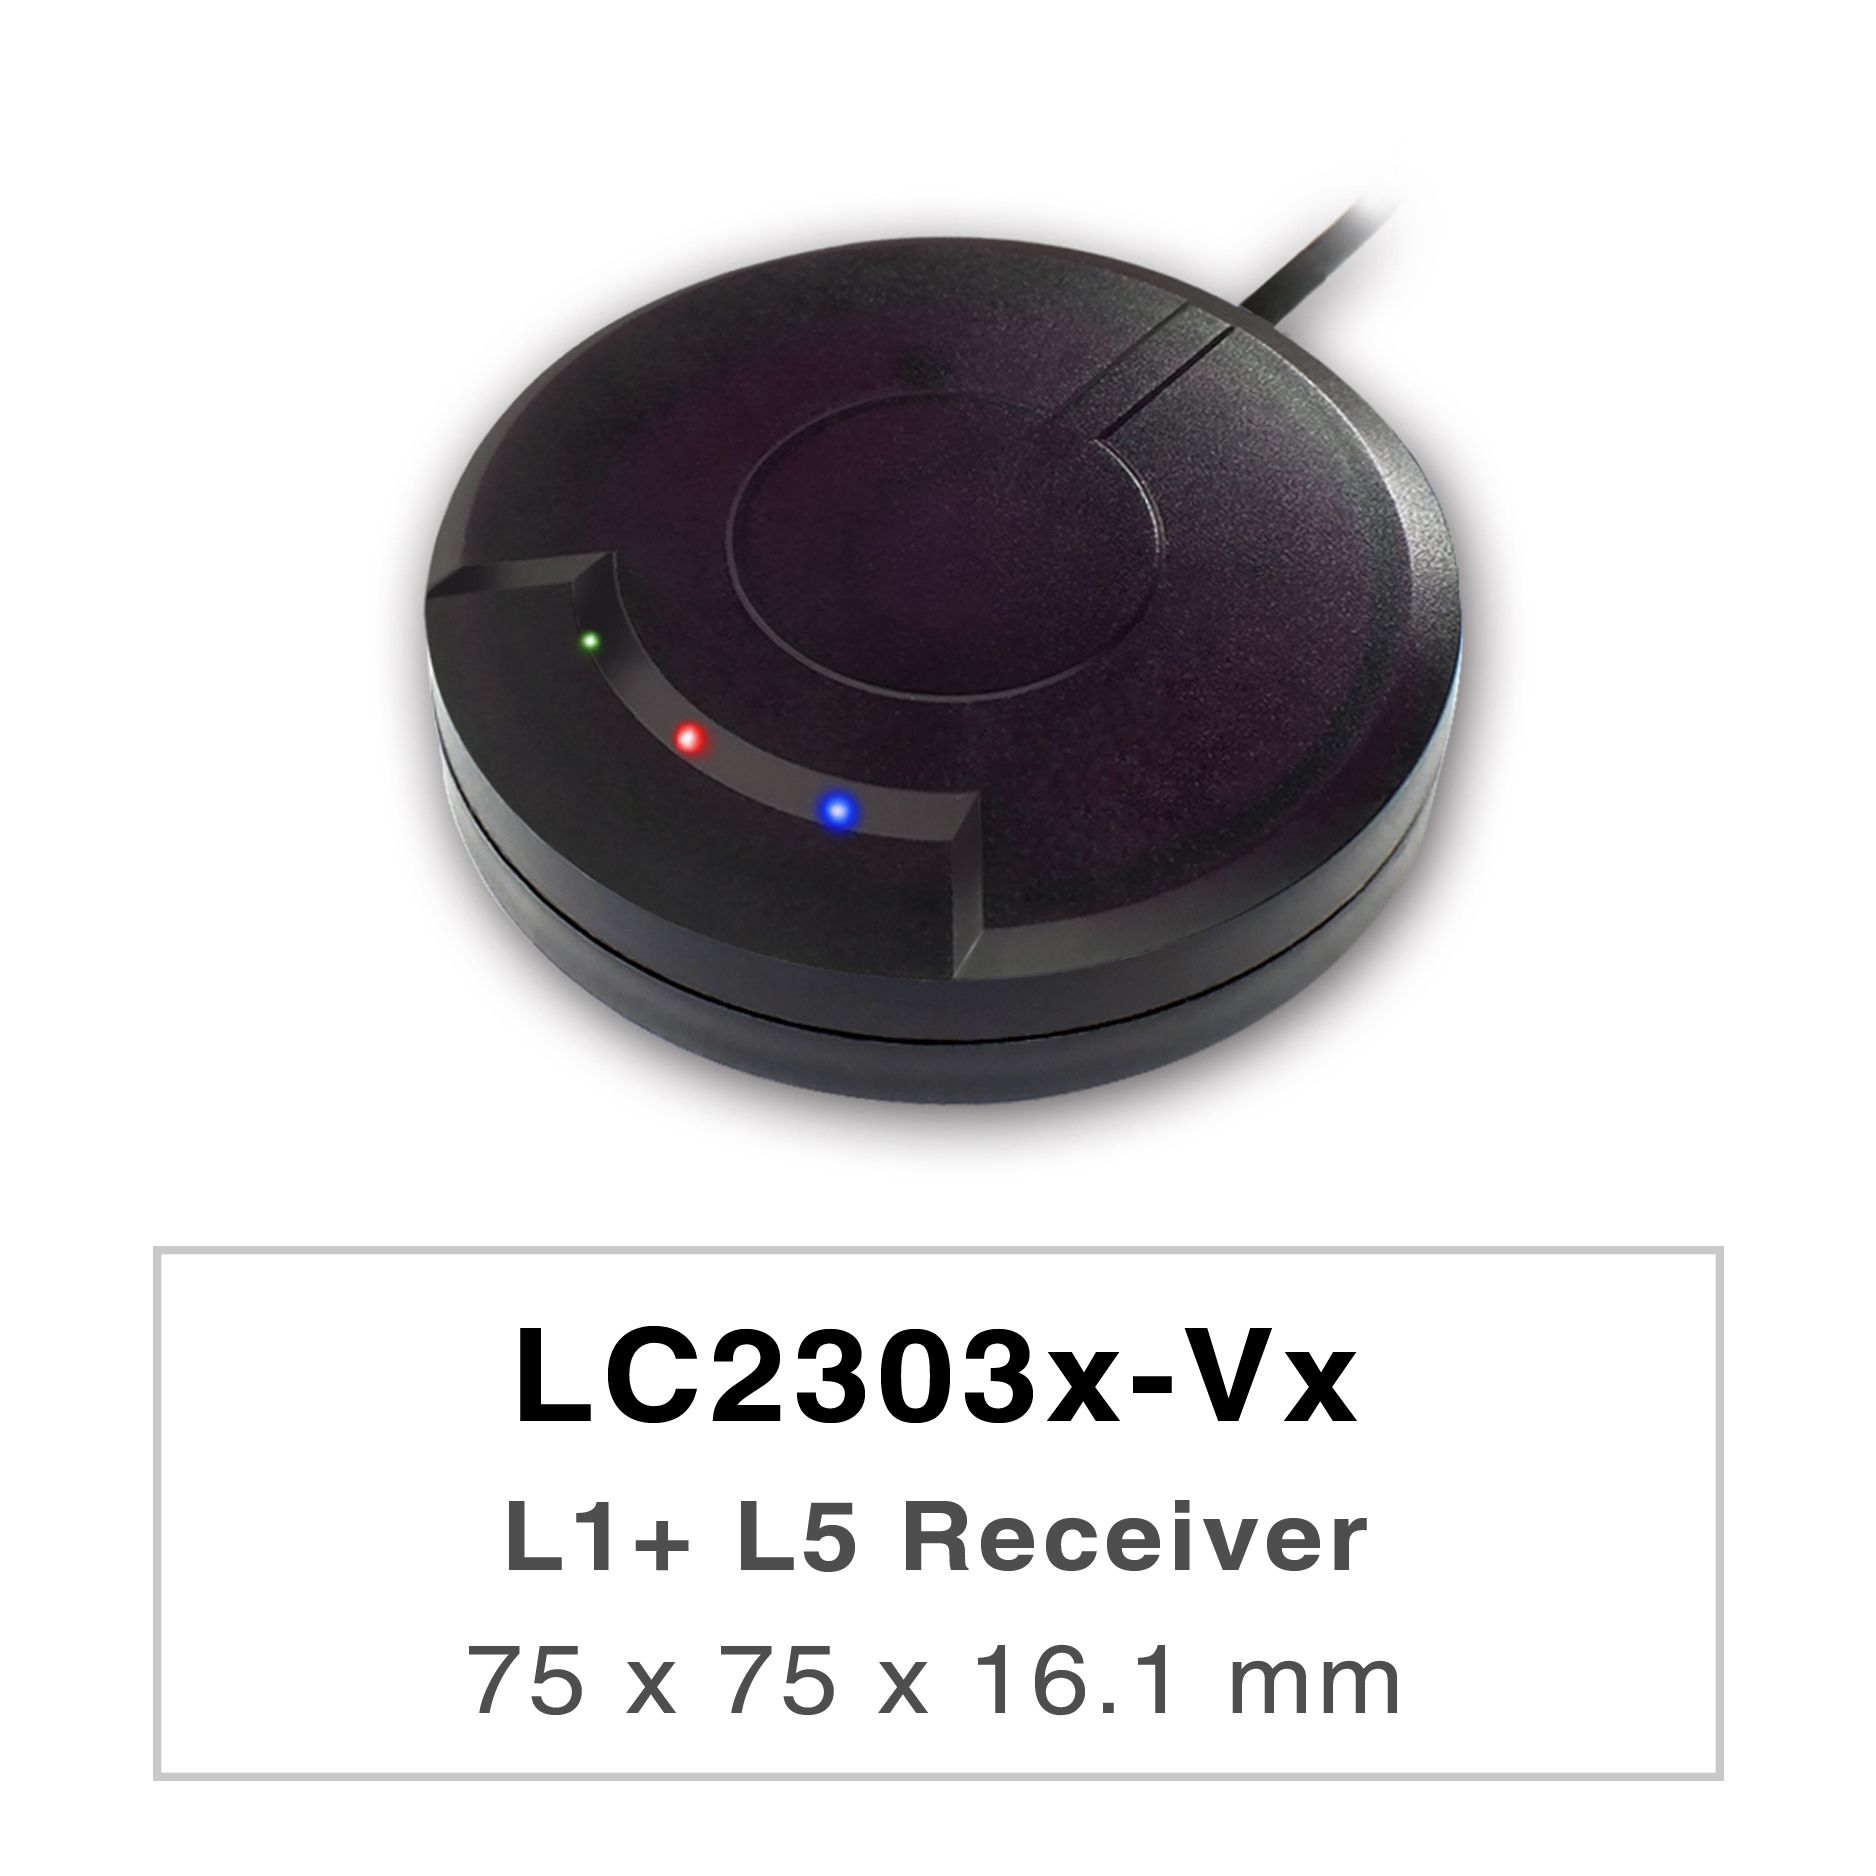 Les produits de la série LC2303x-Vx sont des récepteurs GNSS bi-bande hautes performances (également appelés souris GNSS) capables de suivre tous les systèmes mondiaux de navigation civile (GPS, GLONASS, BDS, GALILEO, QZSS et IRNSS).